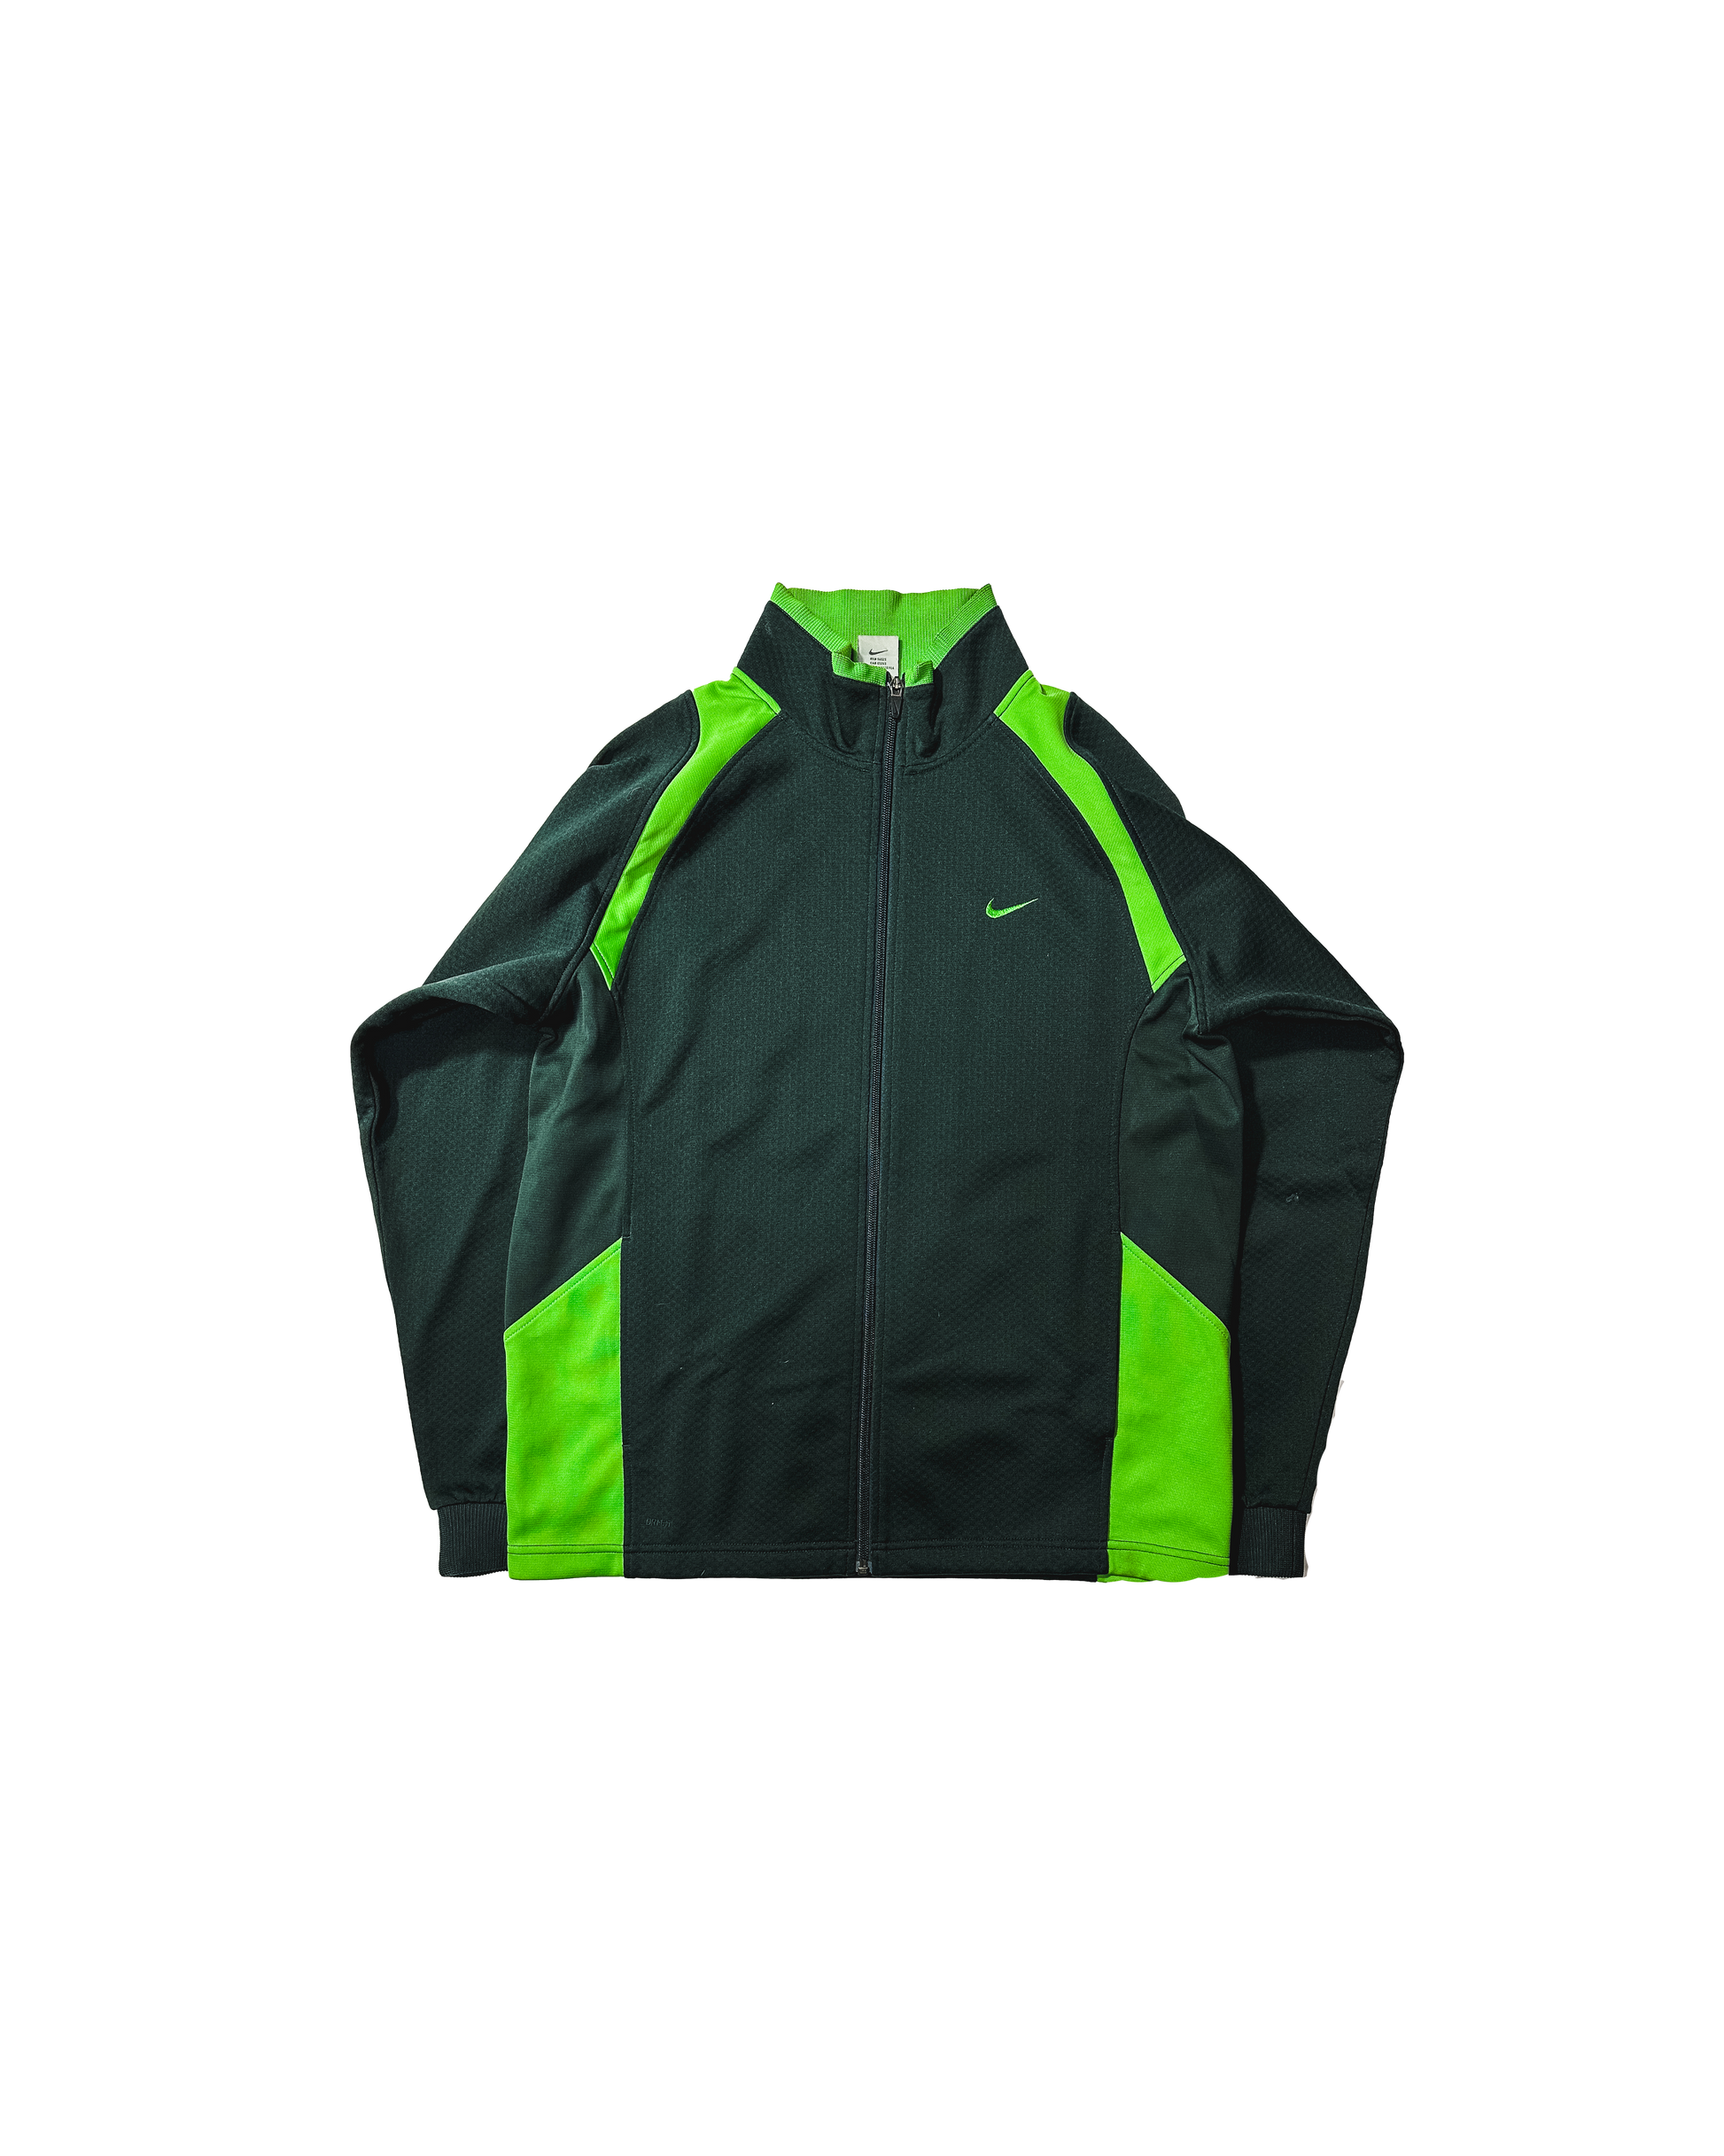 00s COLUMBIA" technical jacket